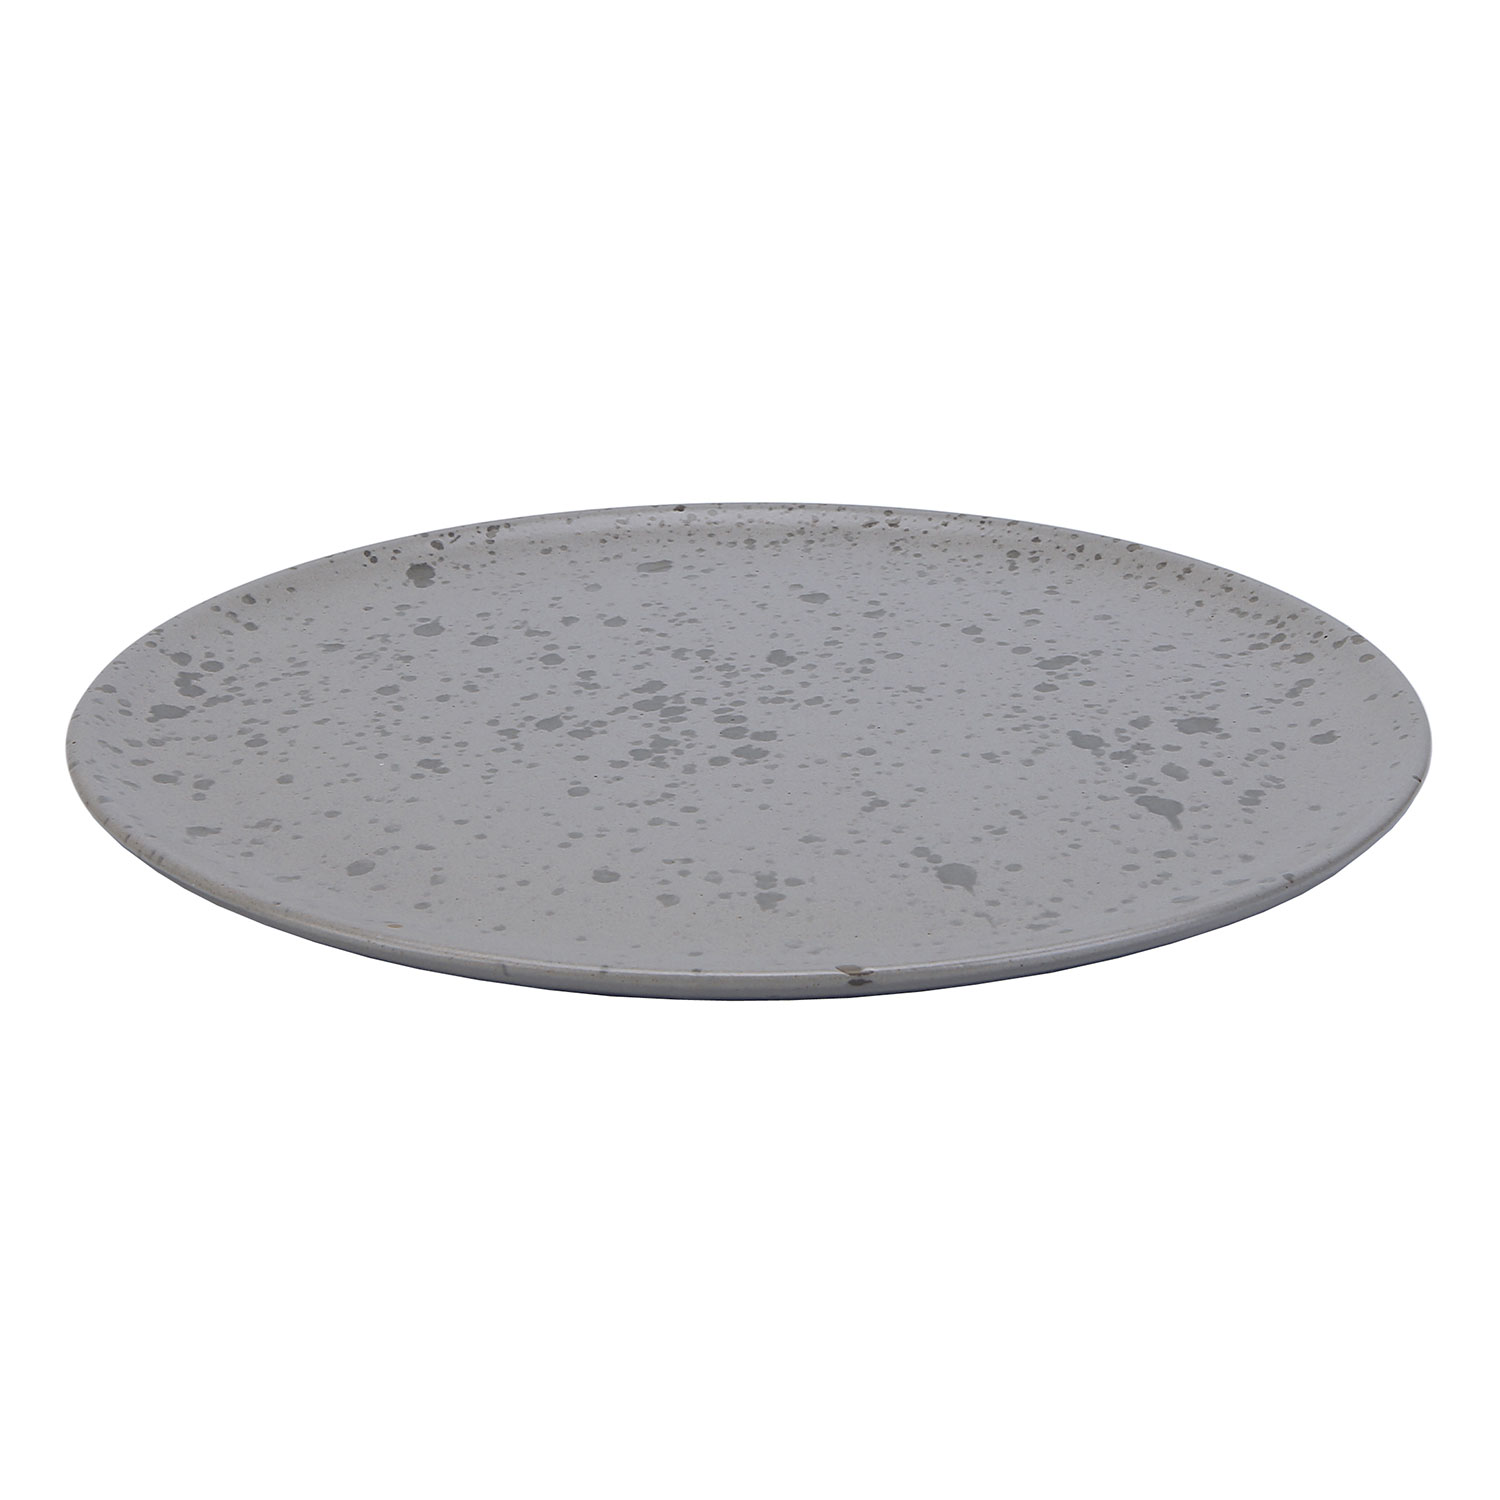 Raw Plate 23 cm, Grey - Aida @ RoyalDesign